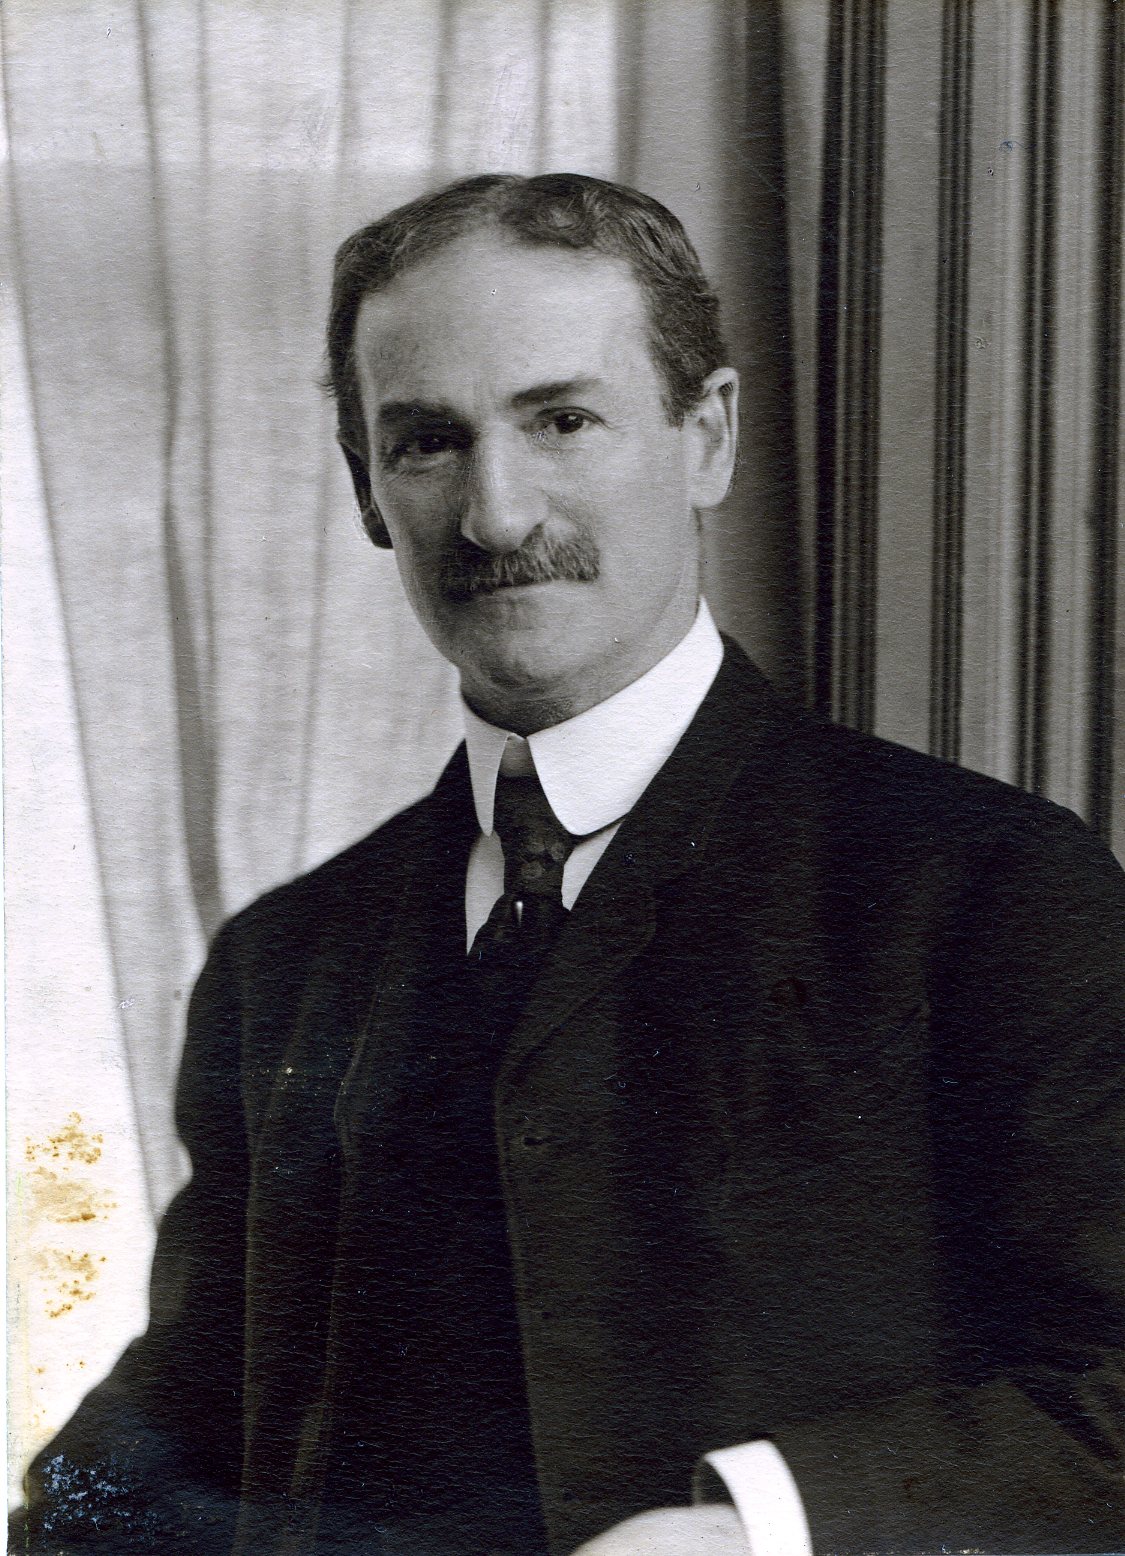 Member portrait of William J. Henderson